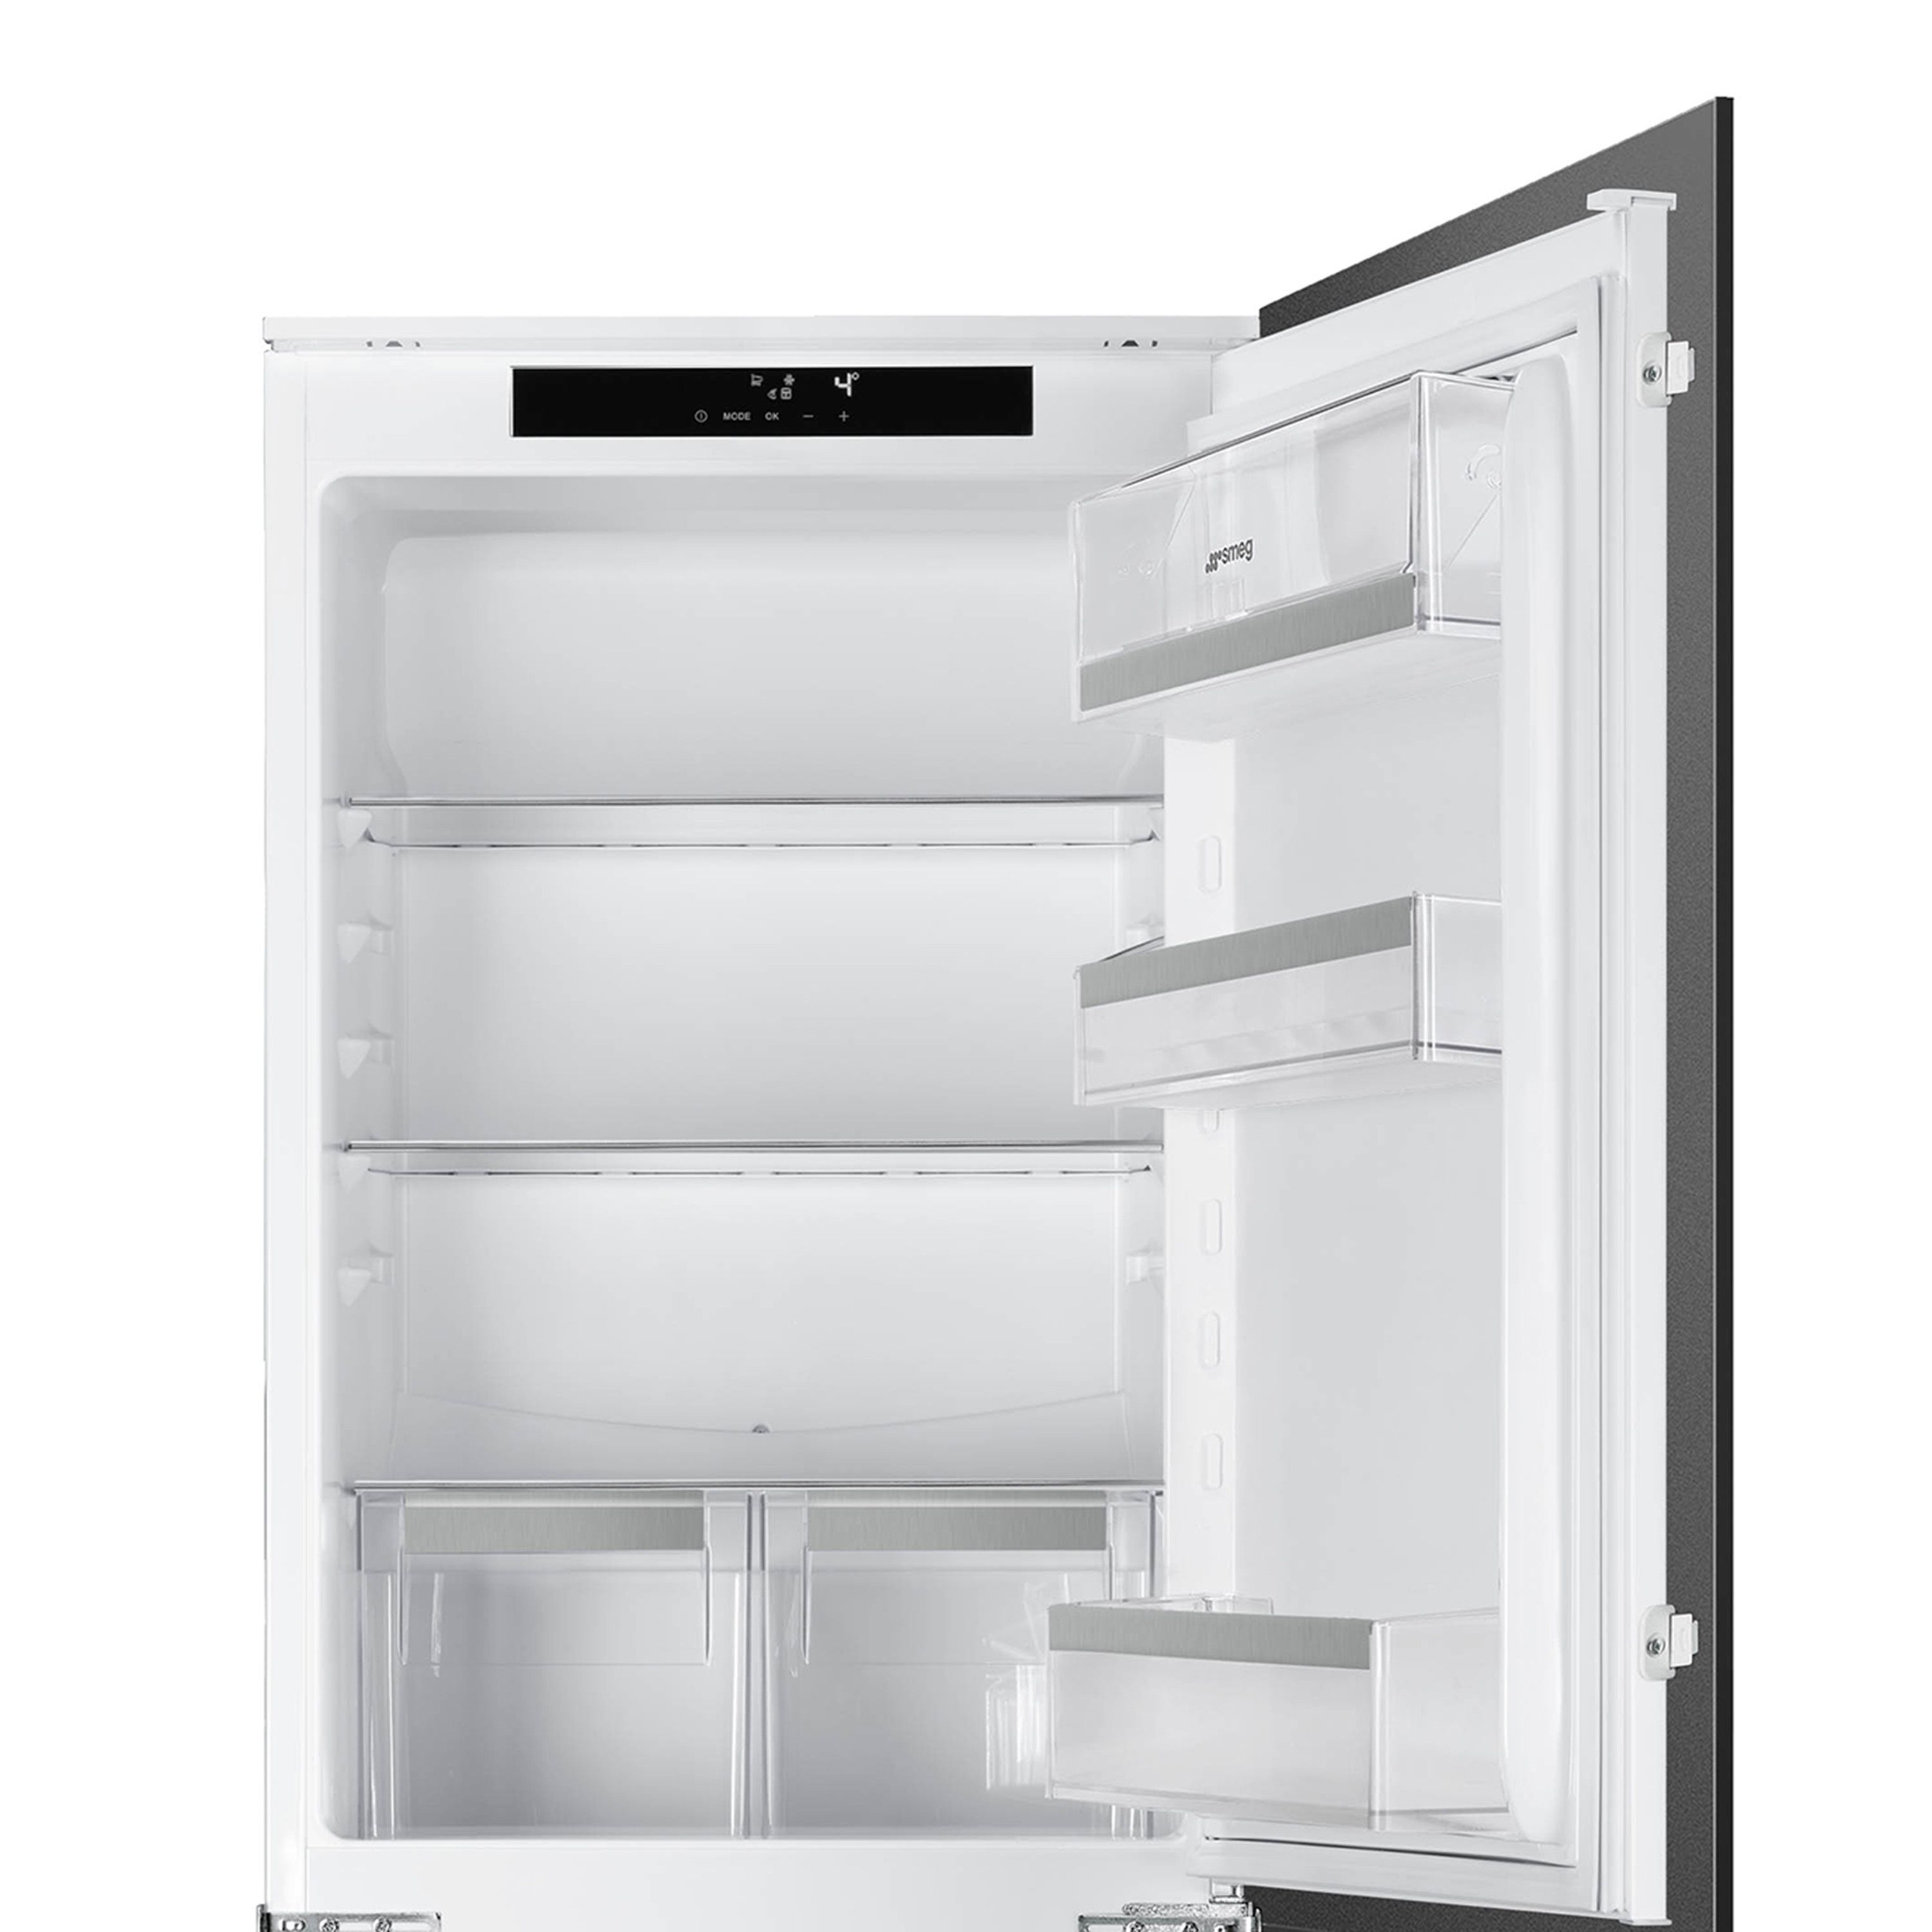 Smeg UKC8174NF_WH 50:50 Built-in Frost free Fridge freezer - White